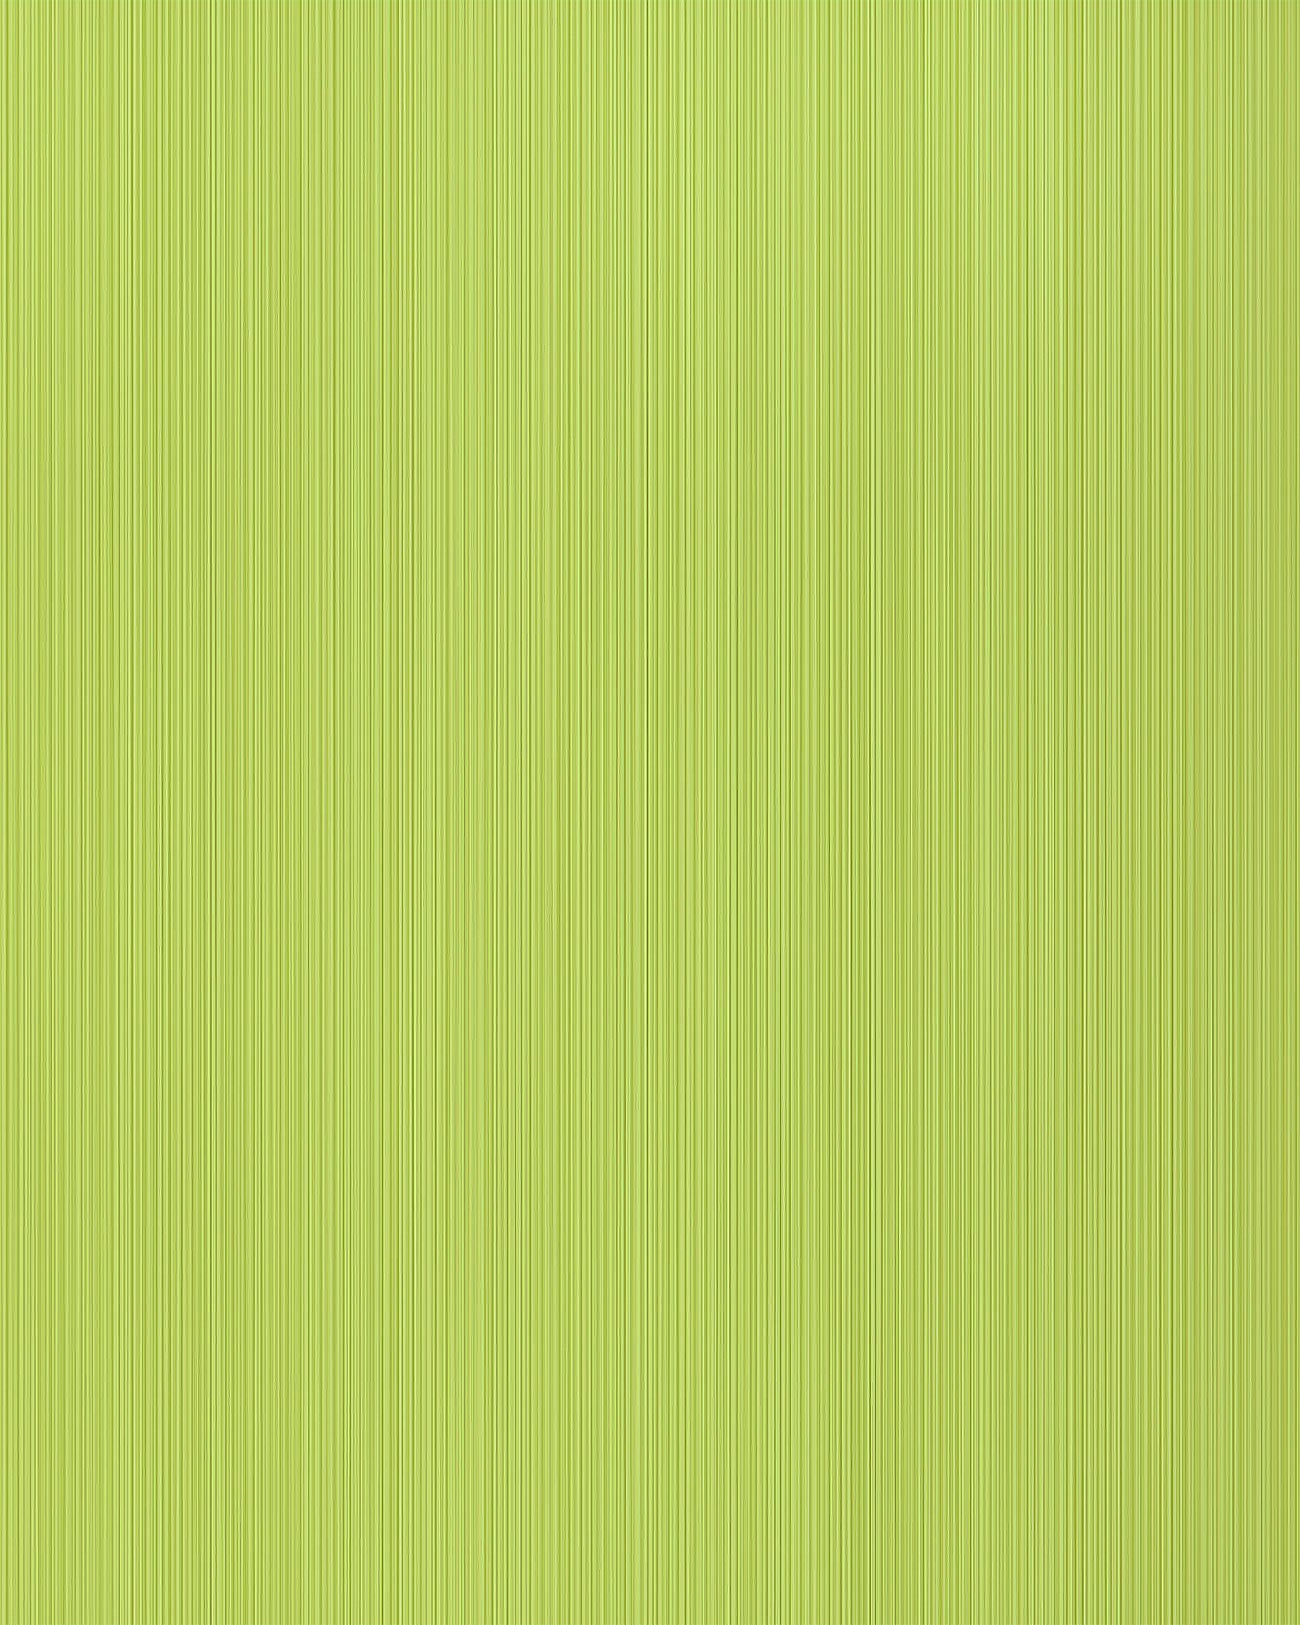 Einfarbige Tapete EDEM 598-25 Strukturtapete matt Streifen grün grün-gelb schwefelgelb 5,33 m2